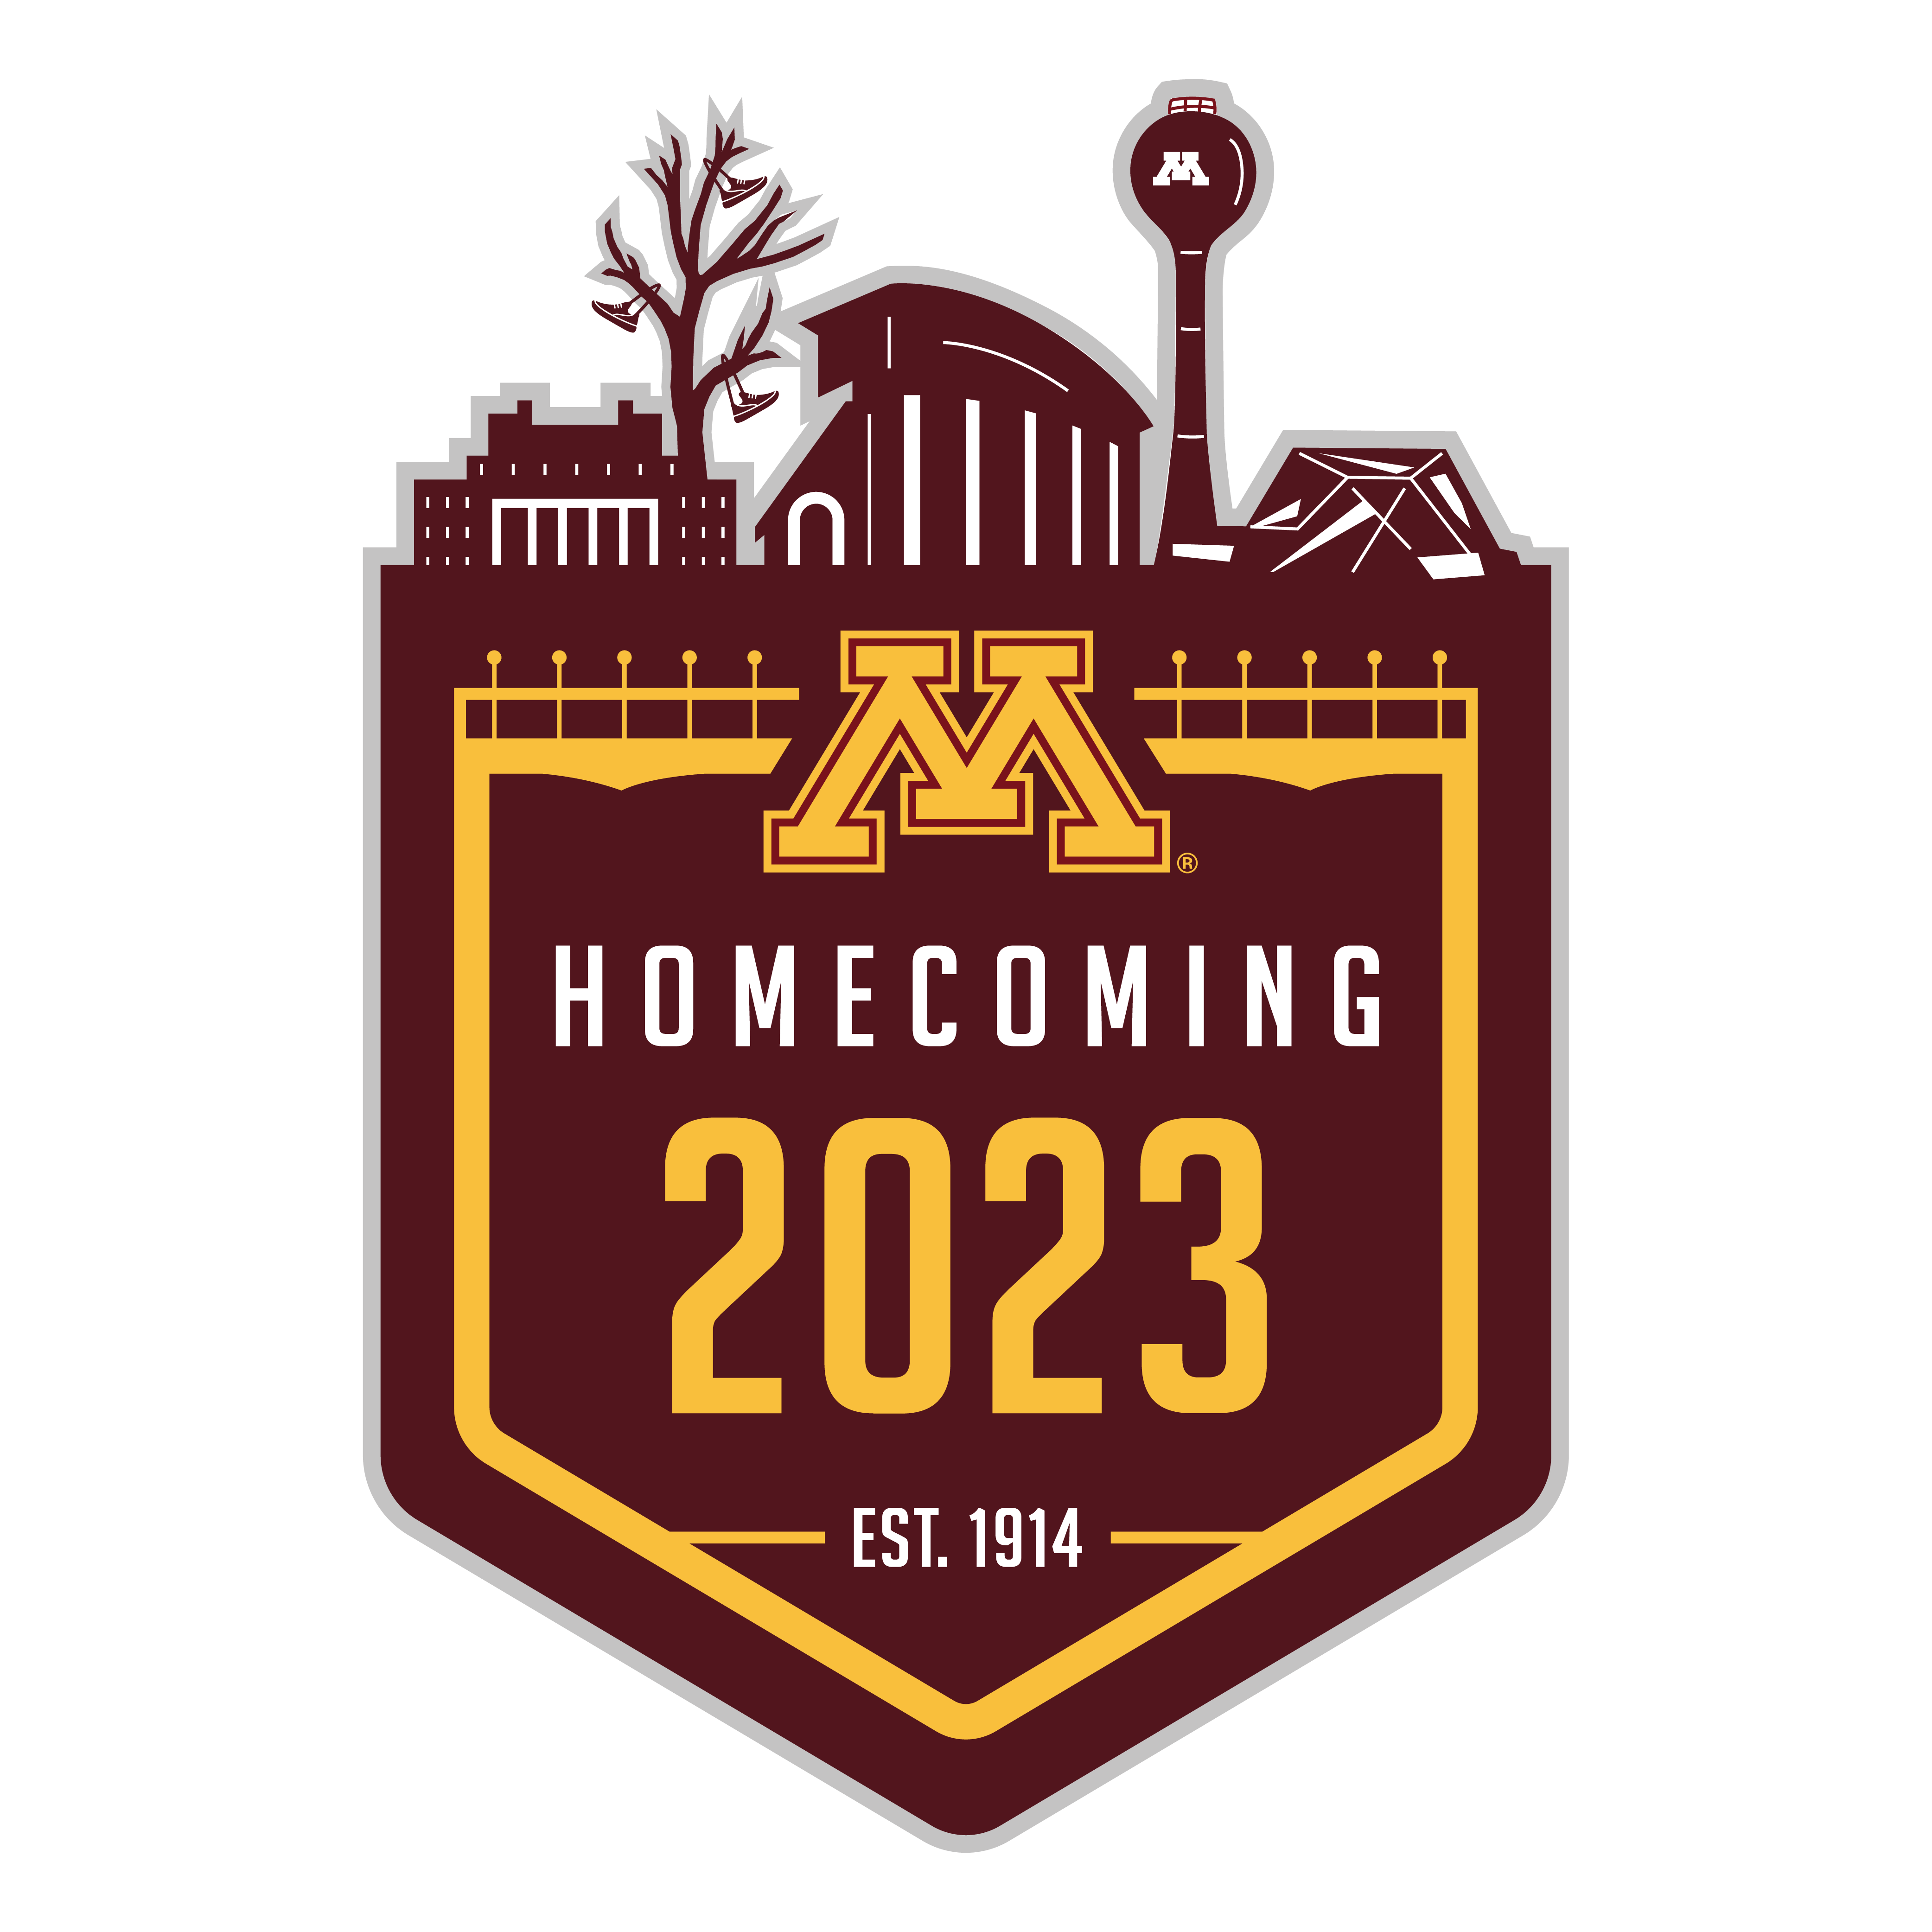 Homecoming logo maroon, gold, and gray